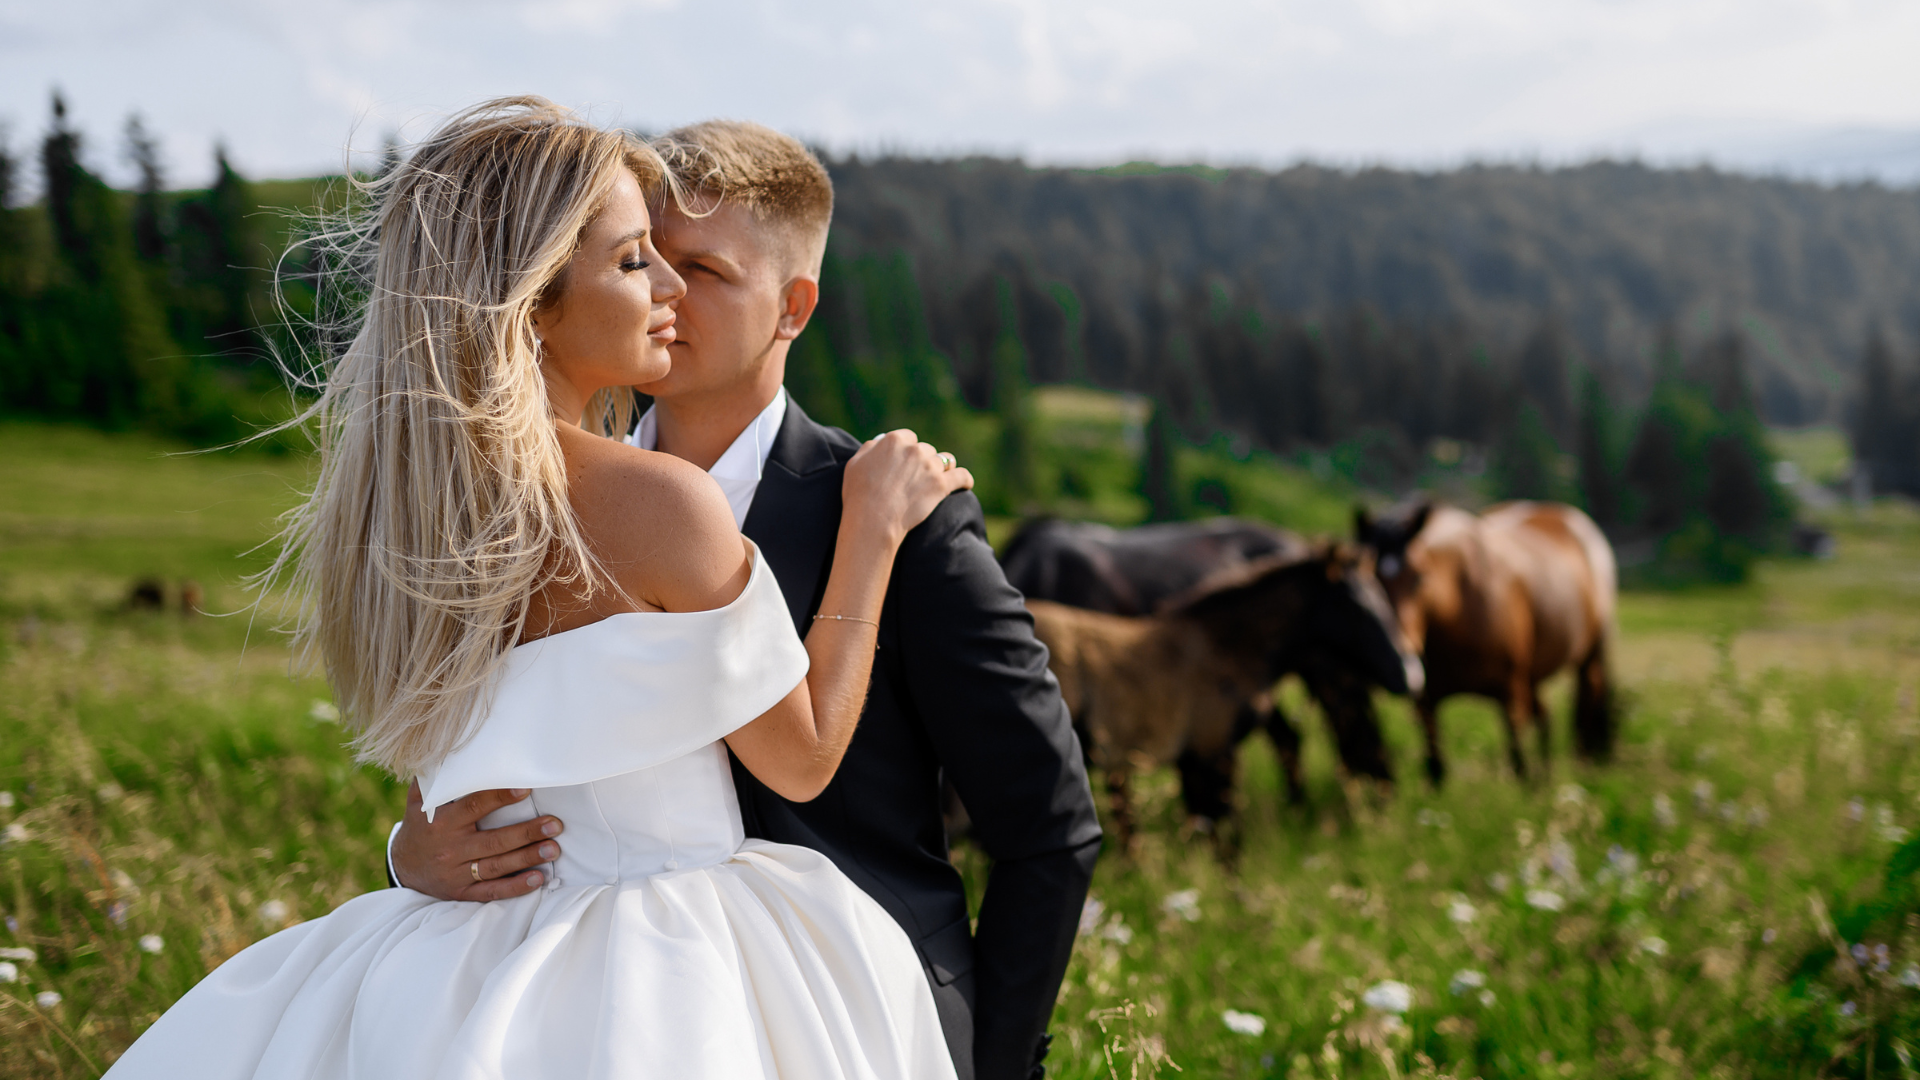 Hledáte netradiční místo, kde uspořádat okouzlující svatbu? Svatby na statku nabízejí nezaměnitelnou venkovskou atmosféru. Podívejte se na naši nabídku.